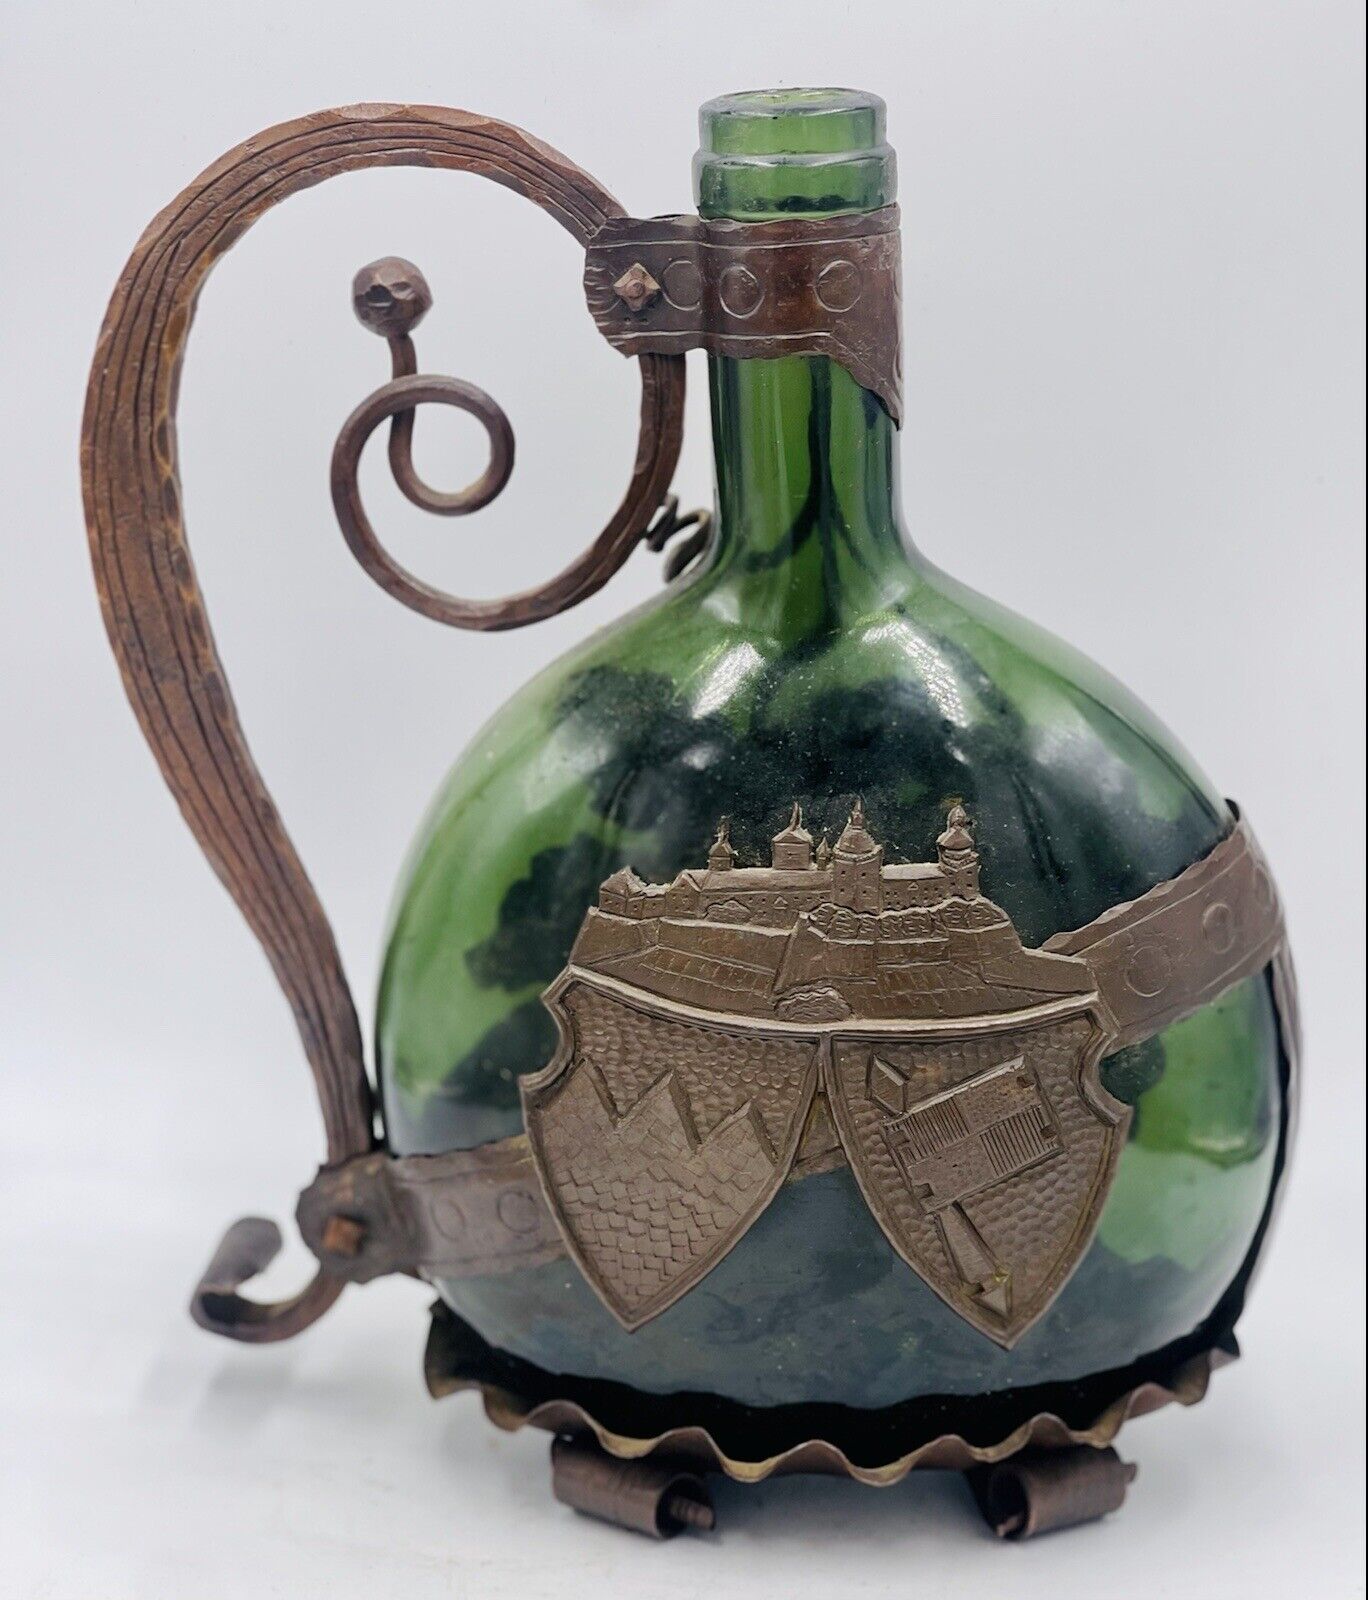 Antique Metal Encased Green Glass Wine Bottle Iron Handle, Ornate Design Vintage